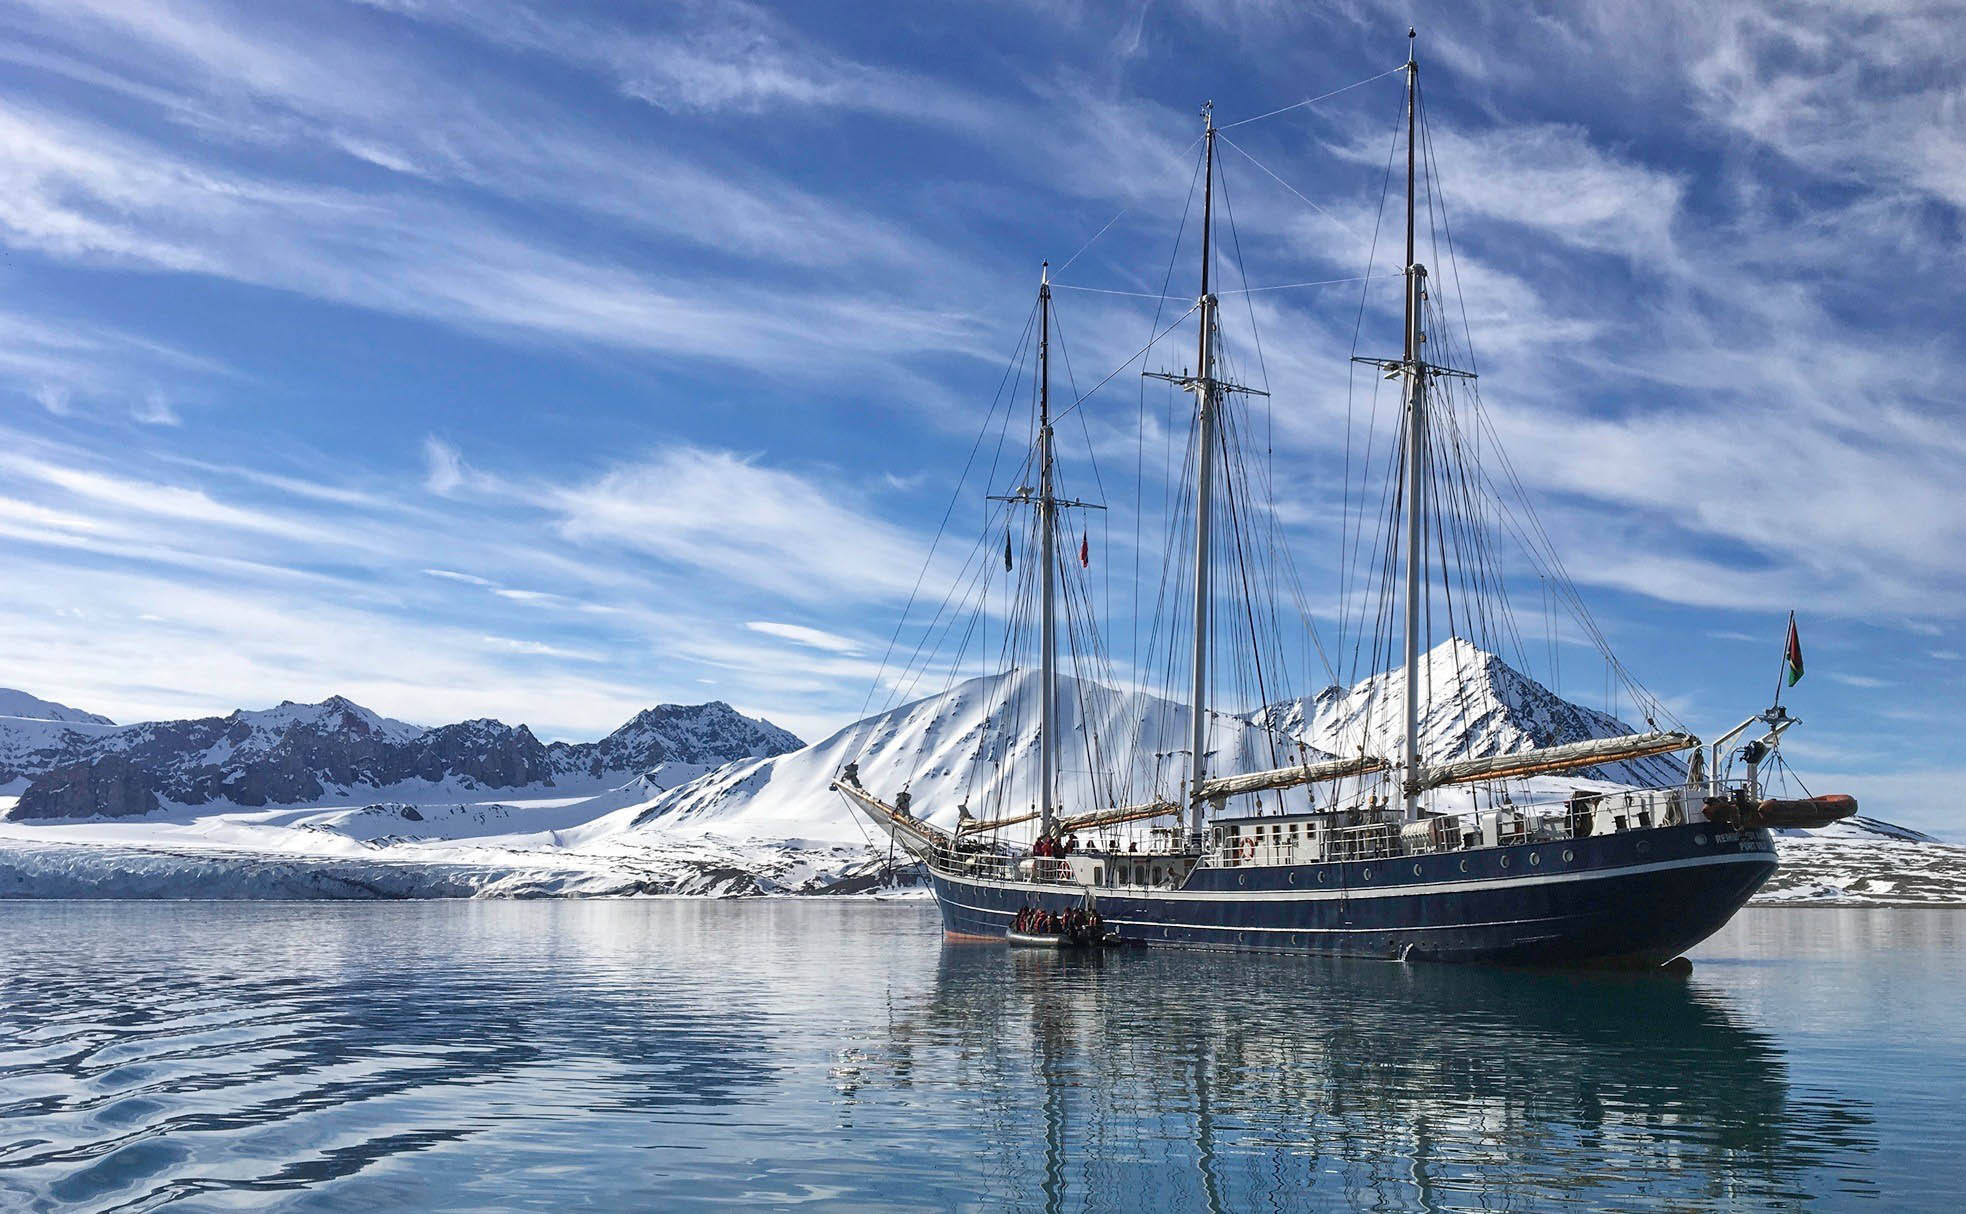 Sailing in Spitsbergen on Rembrandt - Christine Nicol